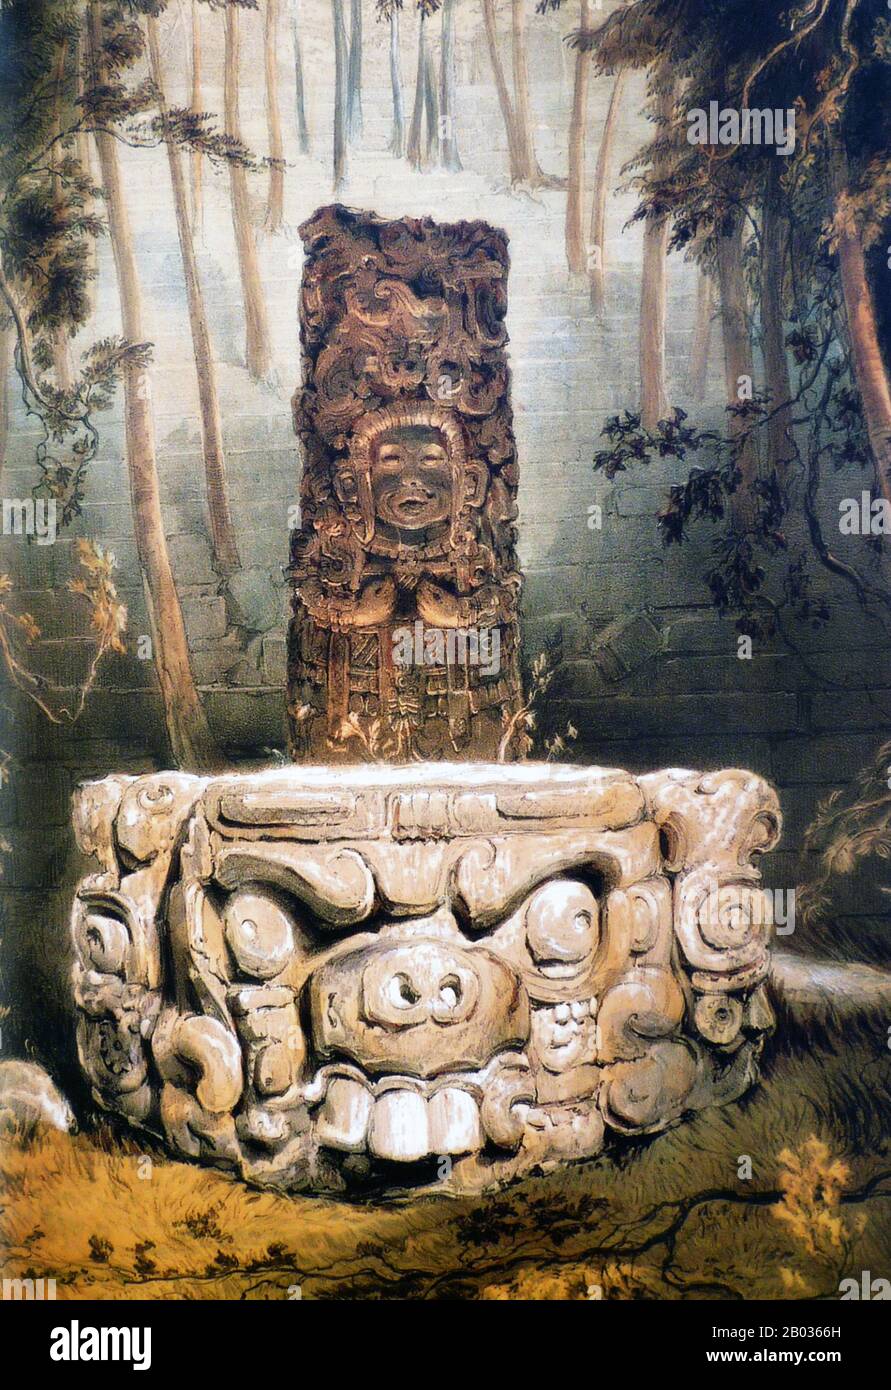 Copán es un sitio arqueológico de la civilización maya ubicado en el Departamento Copán del oeste de Honduras, no lejos de la frontera con Guatemala. Fue la ciudad capital de un gran reino del período Clásico desde el siglo V hasta el siglo IX. La ciudad estaba ubicada en el extremo sureste de la región cultural mesoamericana, en la frontera con la región cultural Istmo-colombiana, y estaba casi rodeada por pueblos no-mayas. Copán estuvo ocupado por más de dos mil años, desde El período Preclásico Temprano hasta el Posclásico. La ciudad desarrolló un estilo escultórico distintivo dentro del Foto de stock